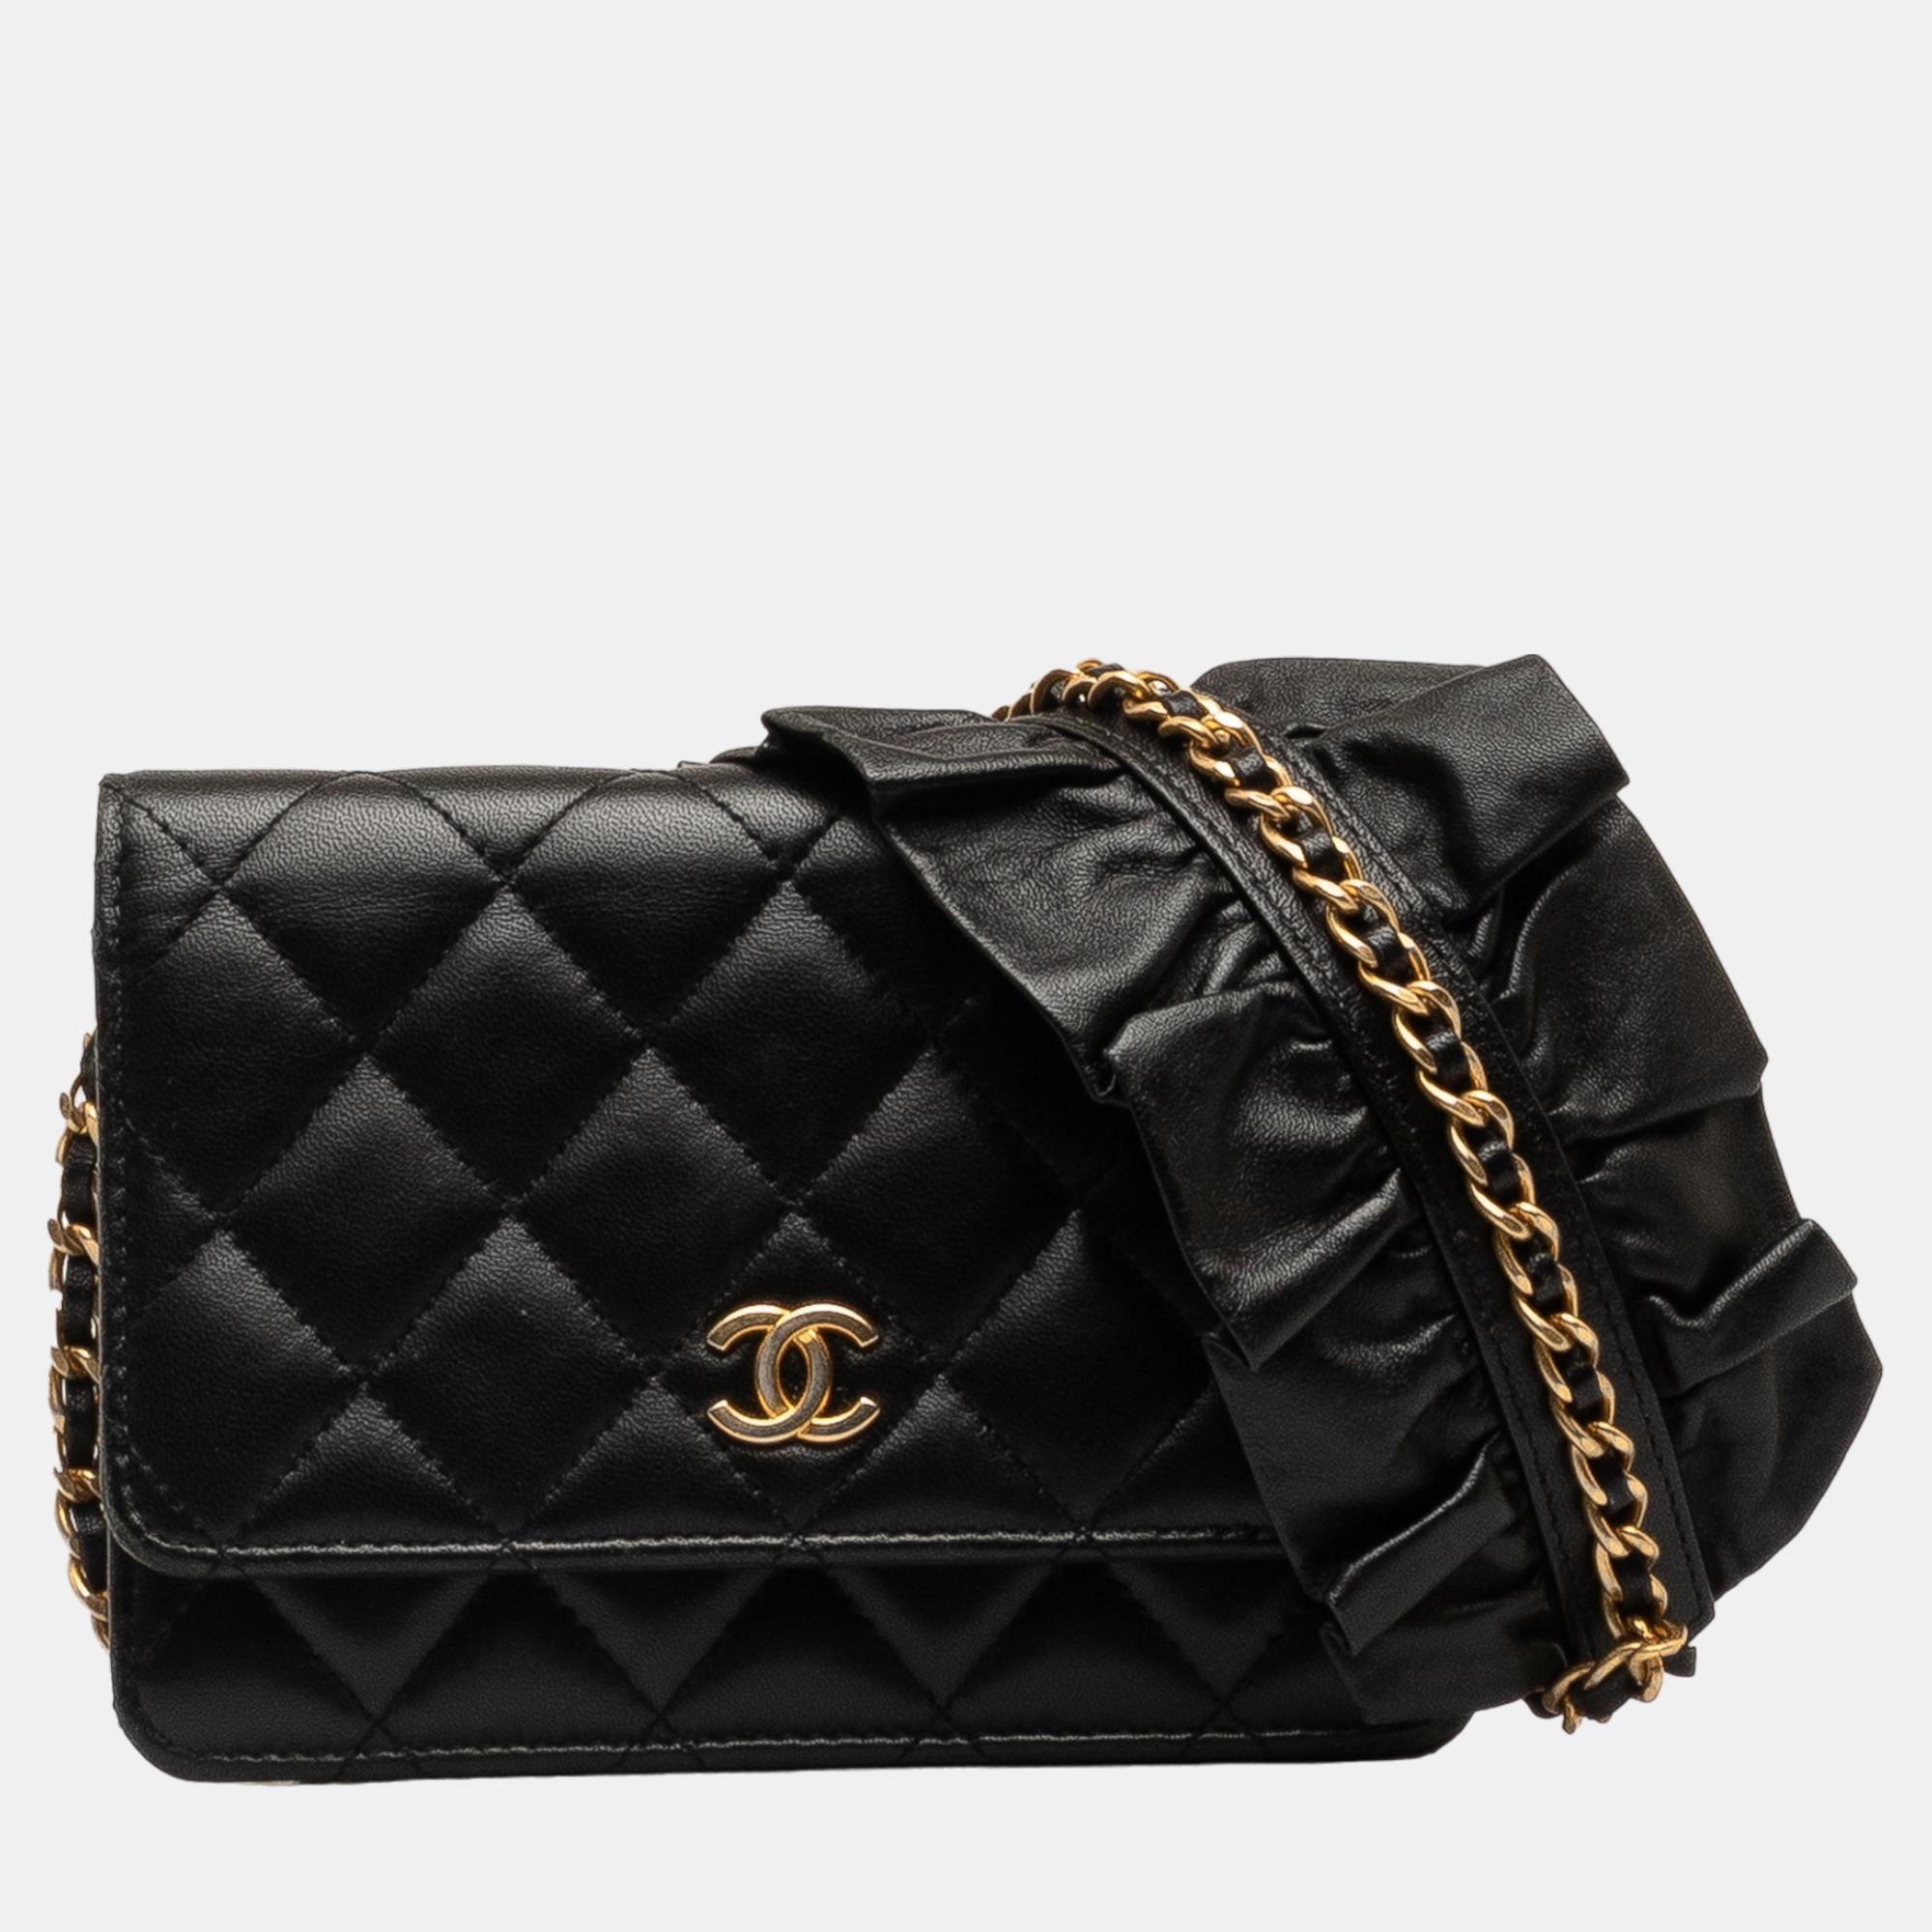 Chanel black lambskin romance wallet on chain